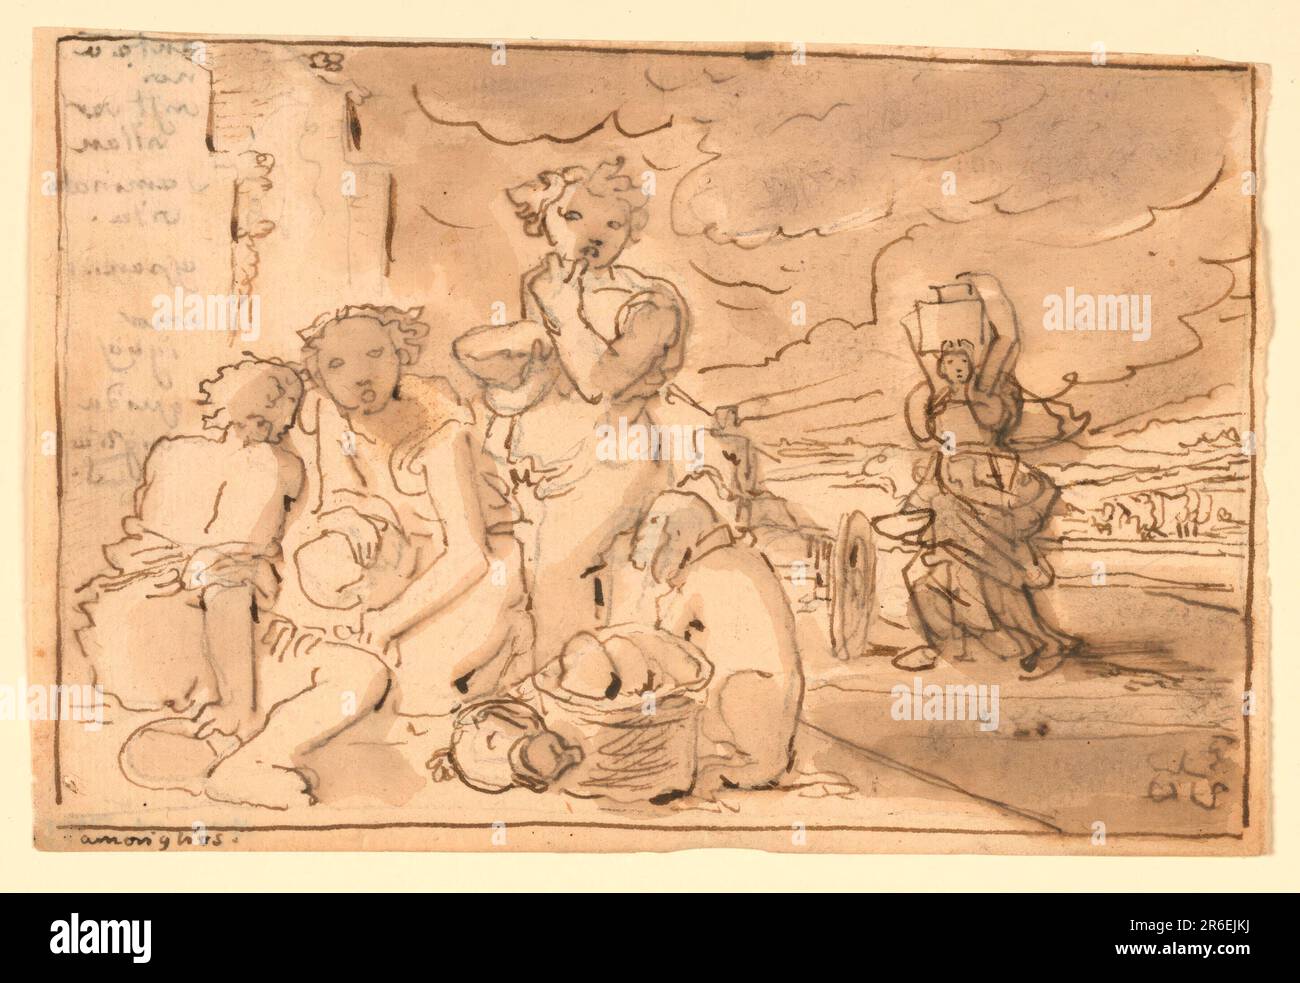 Links eine Gruppe von drei Figuren und ein Hund. In der Mitte, rechts, bewegt sich eine Frau nach links und trägt einen Wasserkrug auf dem Kopf. Rahmenlinie, mit Beschriftung unten, links. Tinte, Pinsel und Wasch auf Papier. Datum: 1820-1850. Museum: Cooper Hewitt, Smithsonian Design Museum. Stockfoto